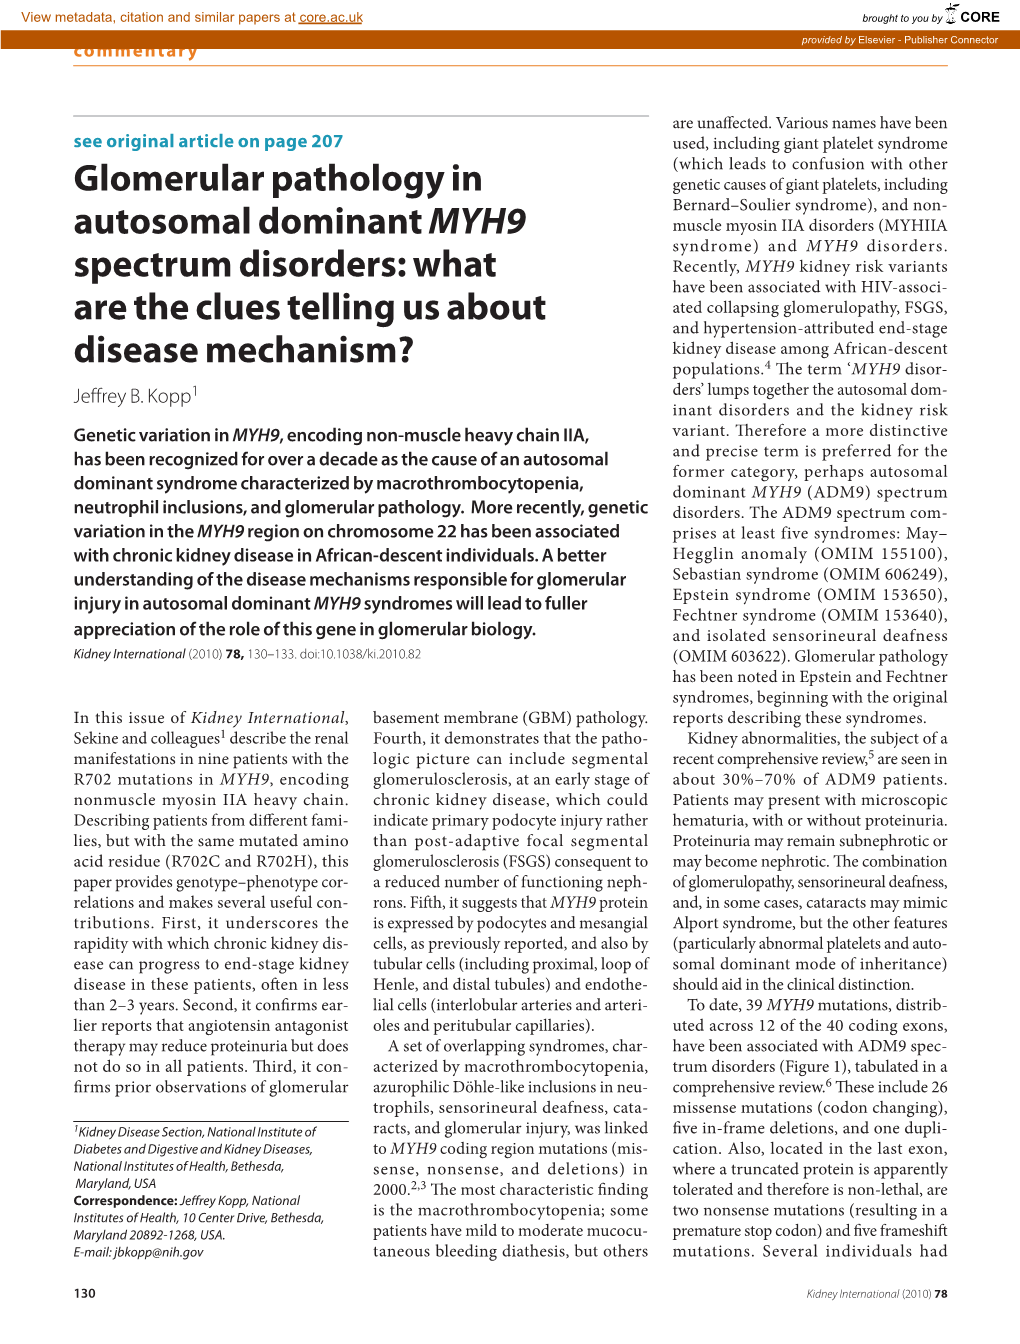 Glomerular Pathology in Autosomal Dominant MYH9 Spectrum